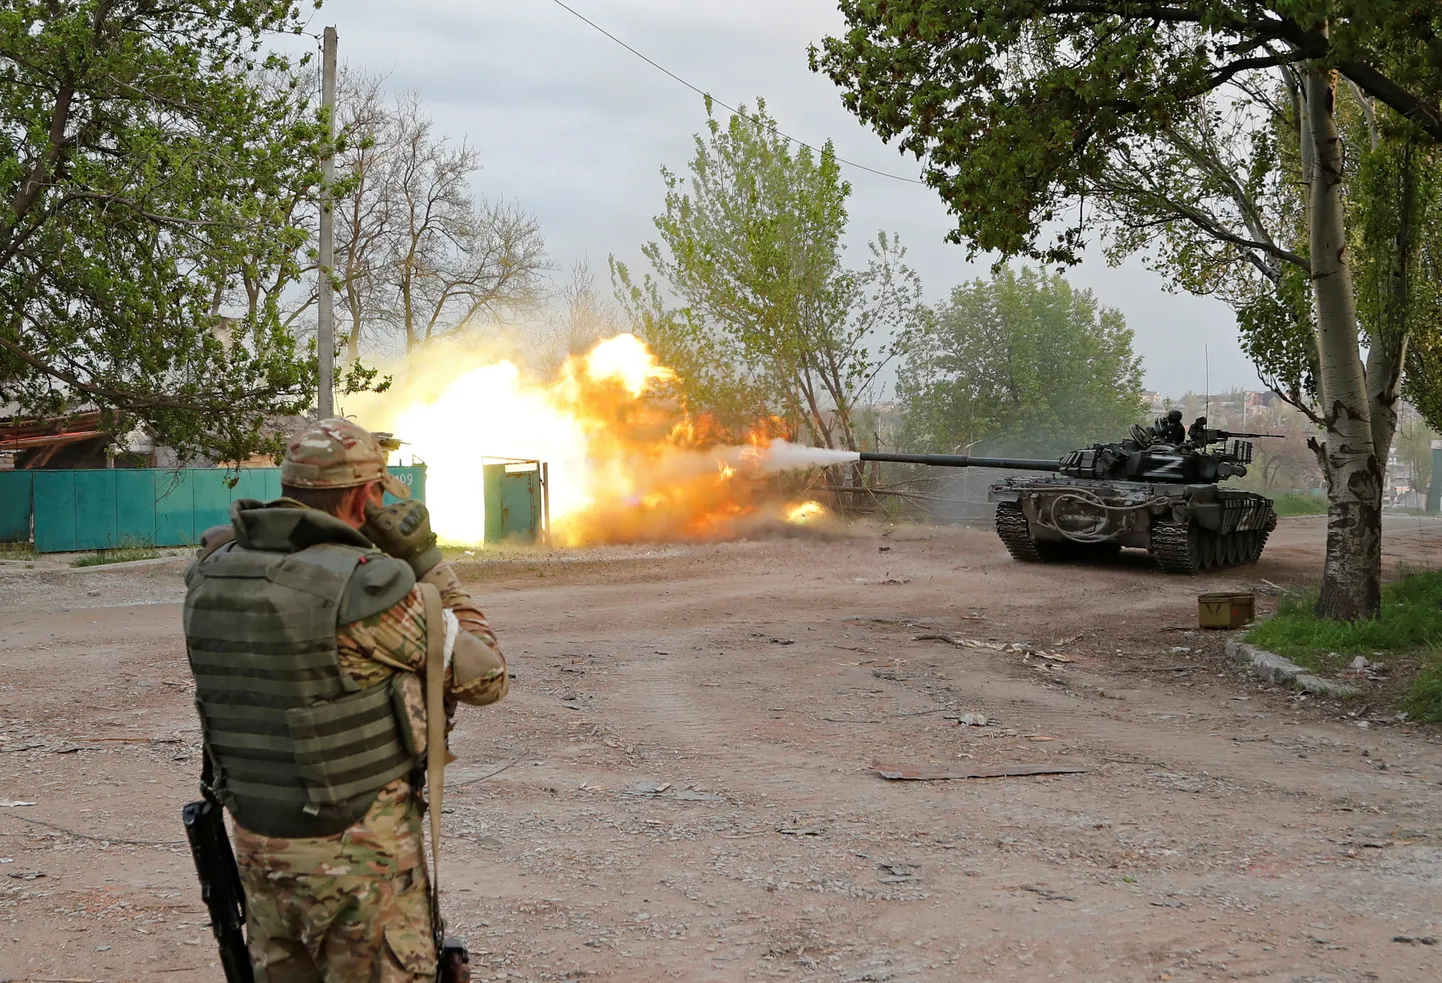 Vene väed tulistamas tankis 5. mail Azovstali lähistel.